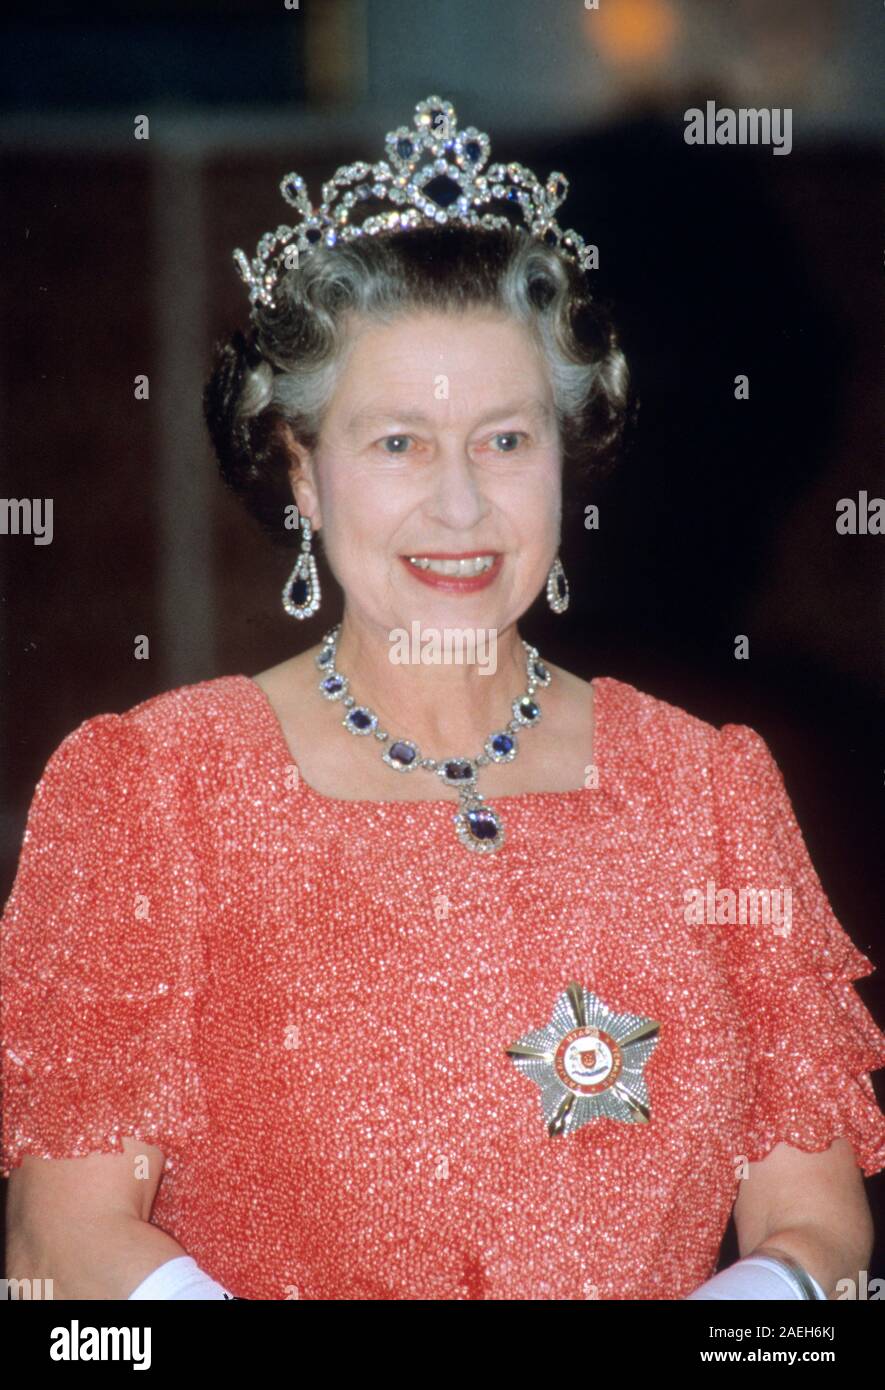 Königin Elizabeth II. an Bord HMY Britannia während ihrer königlichen Besuch in Singapur im Jahr 1989. Stockfoto